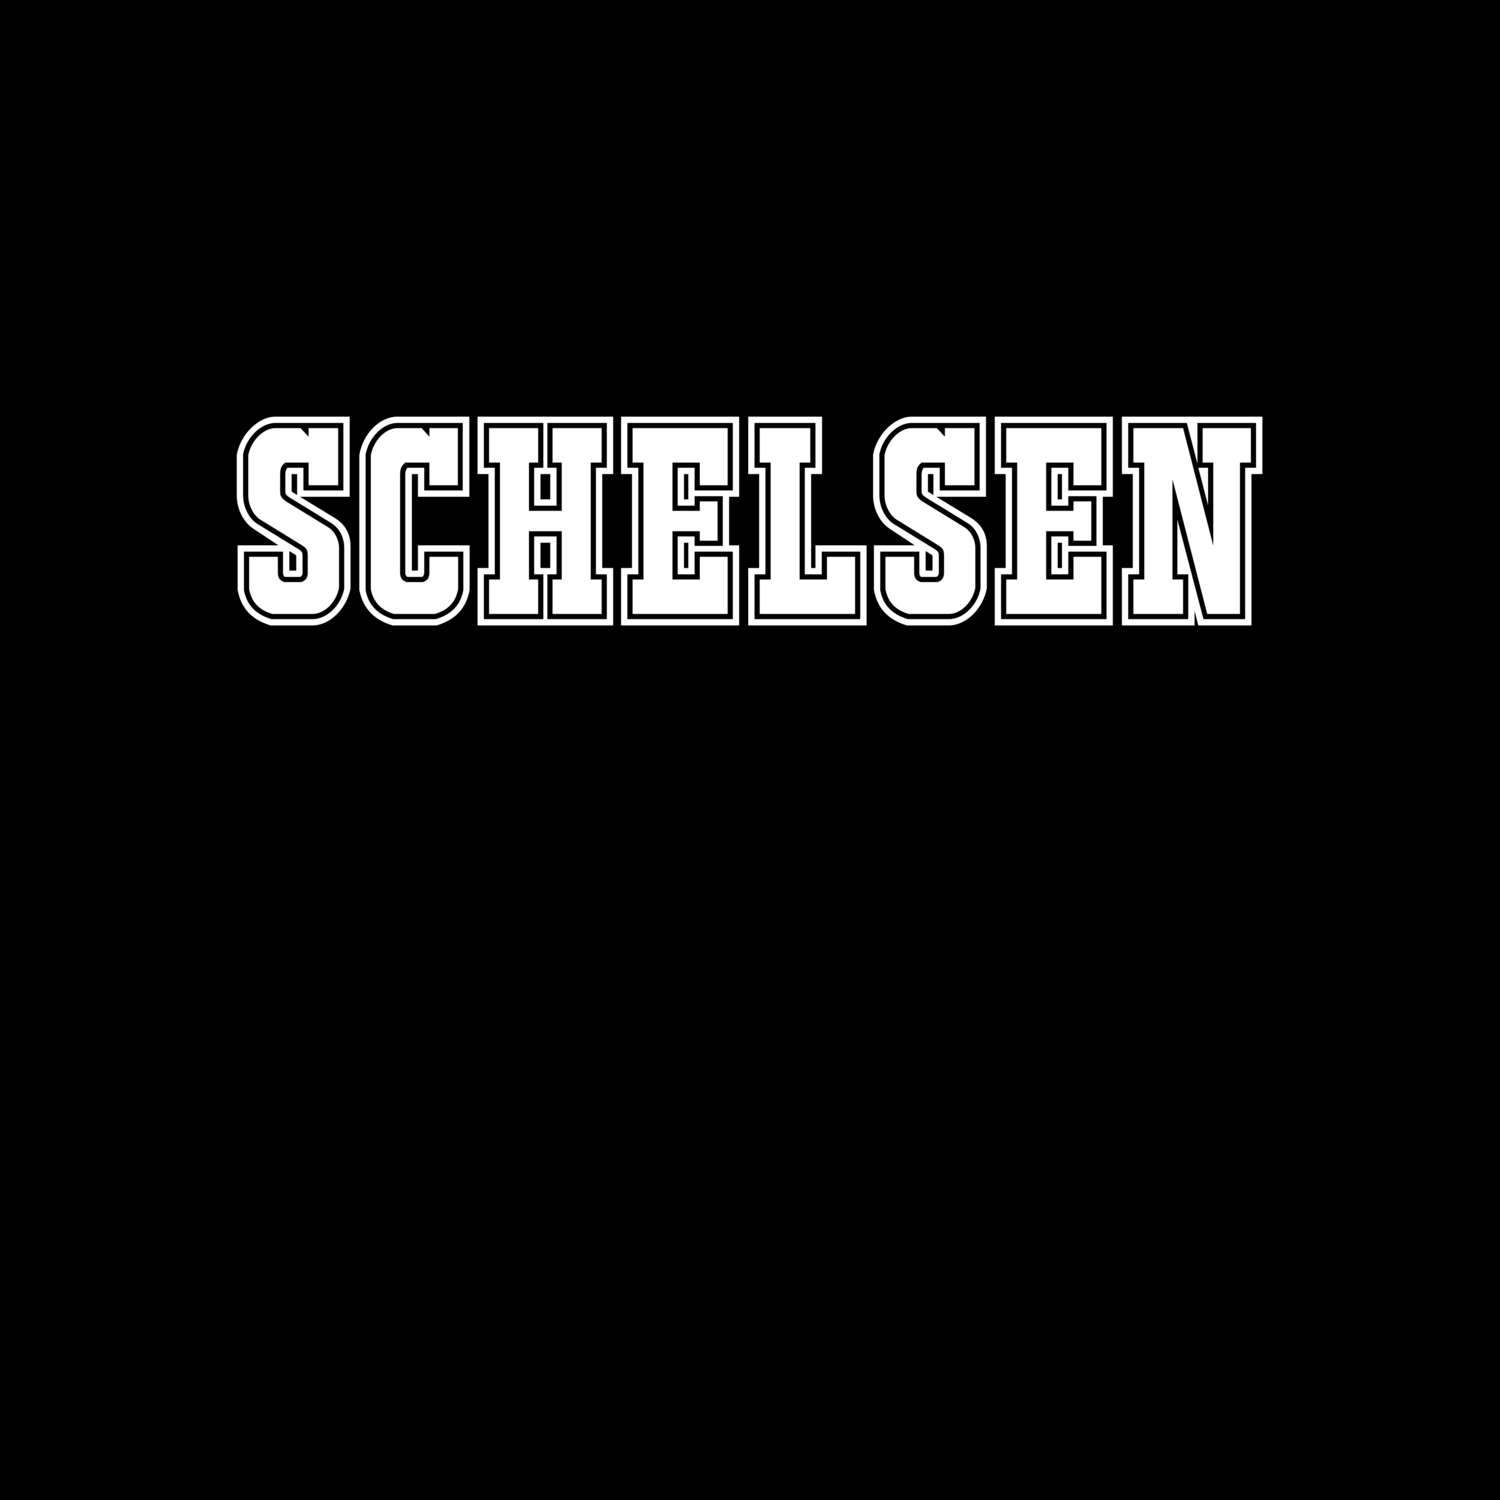 Schelsen T-Shirt »Classic«